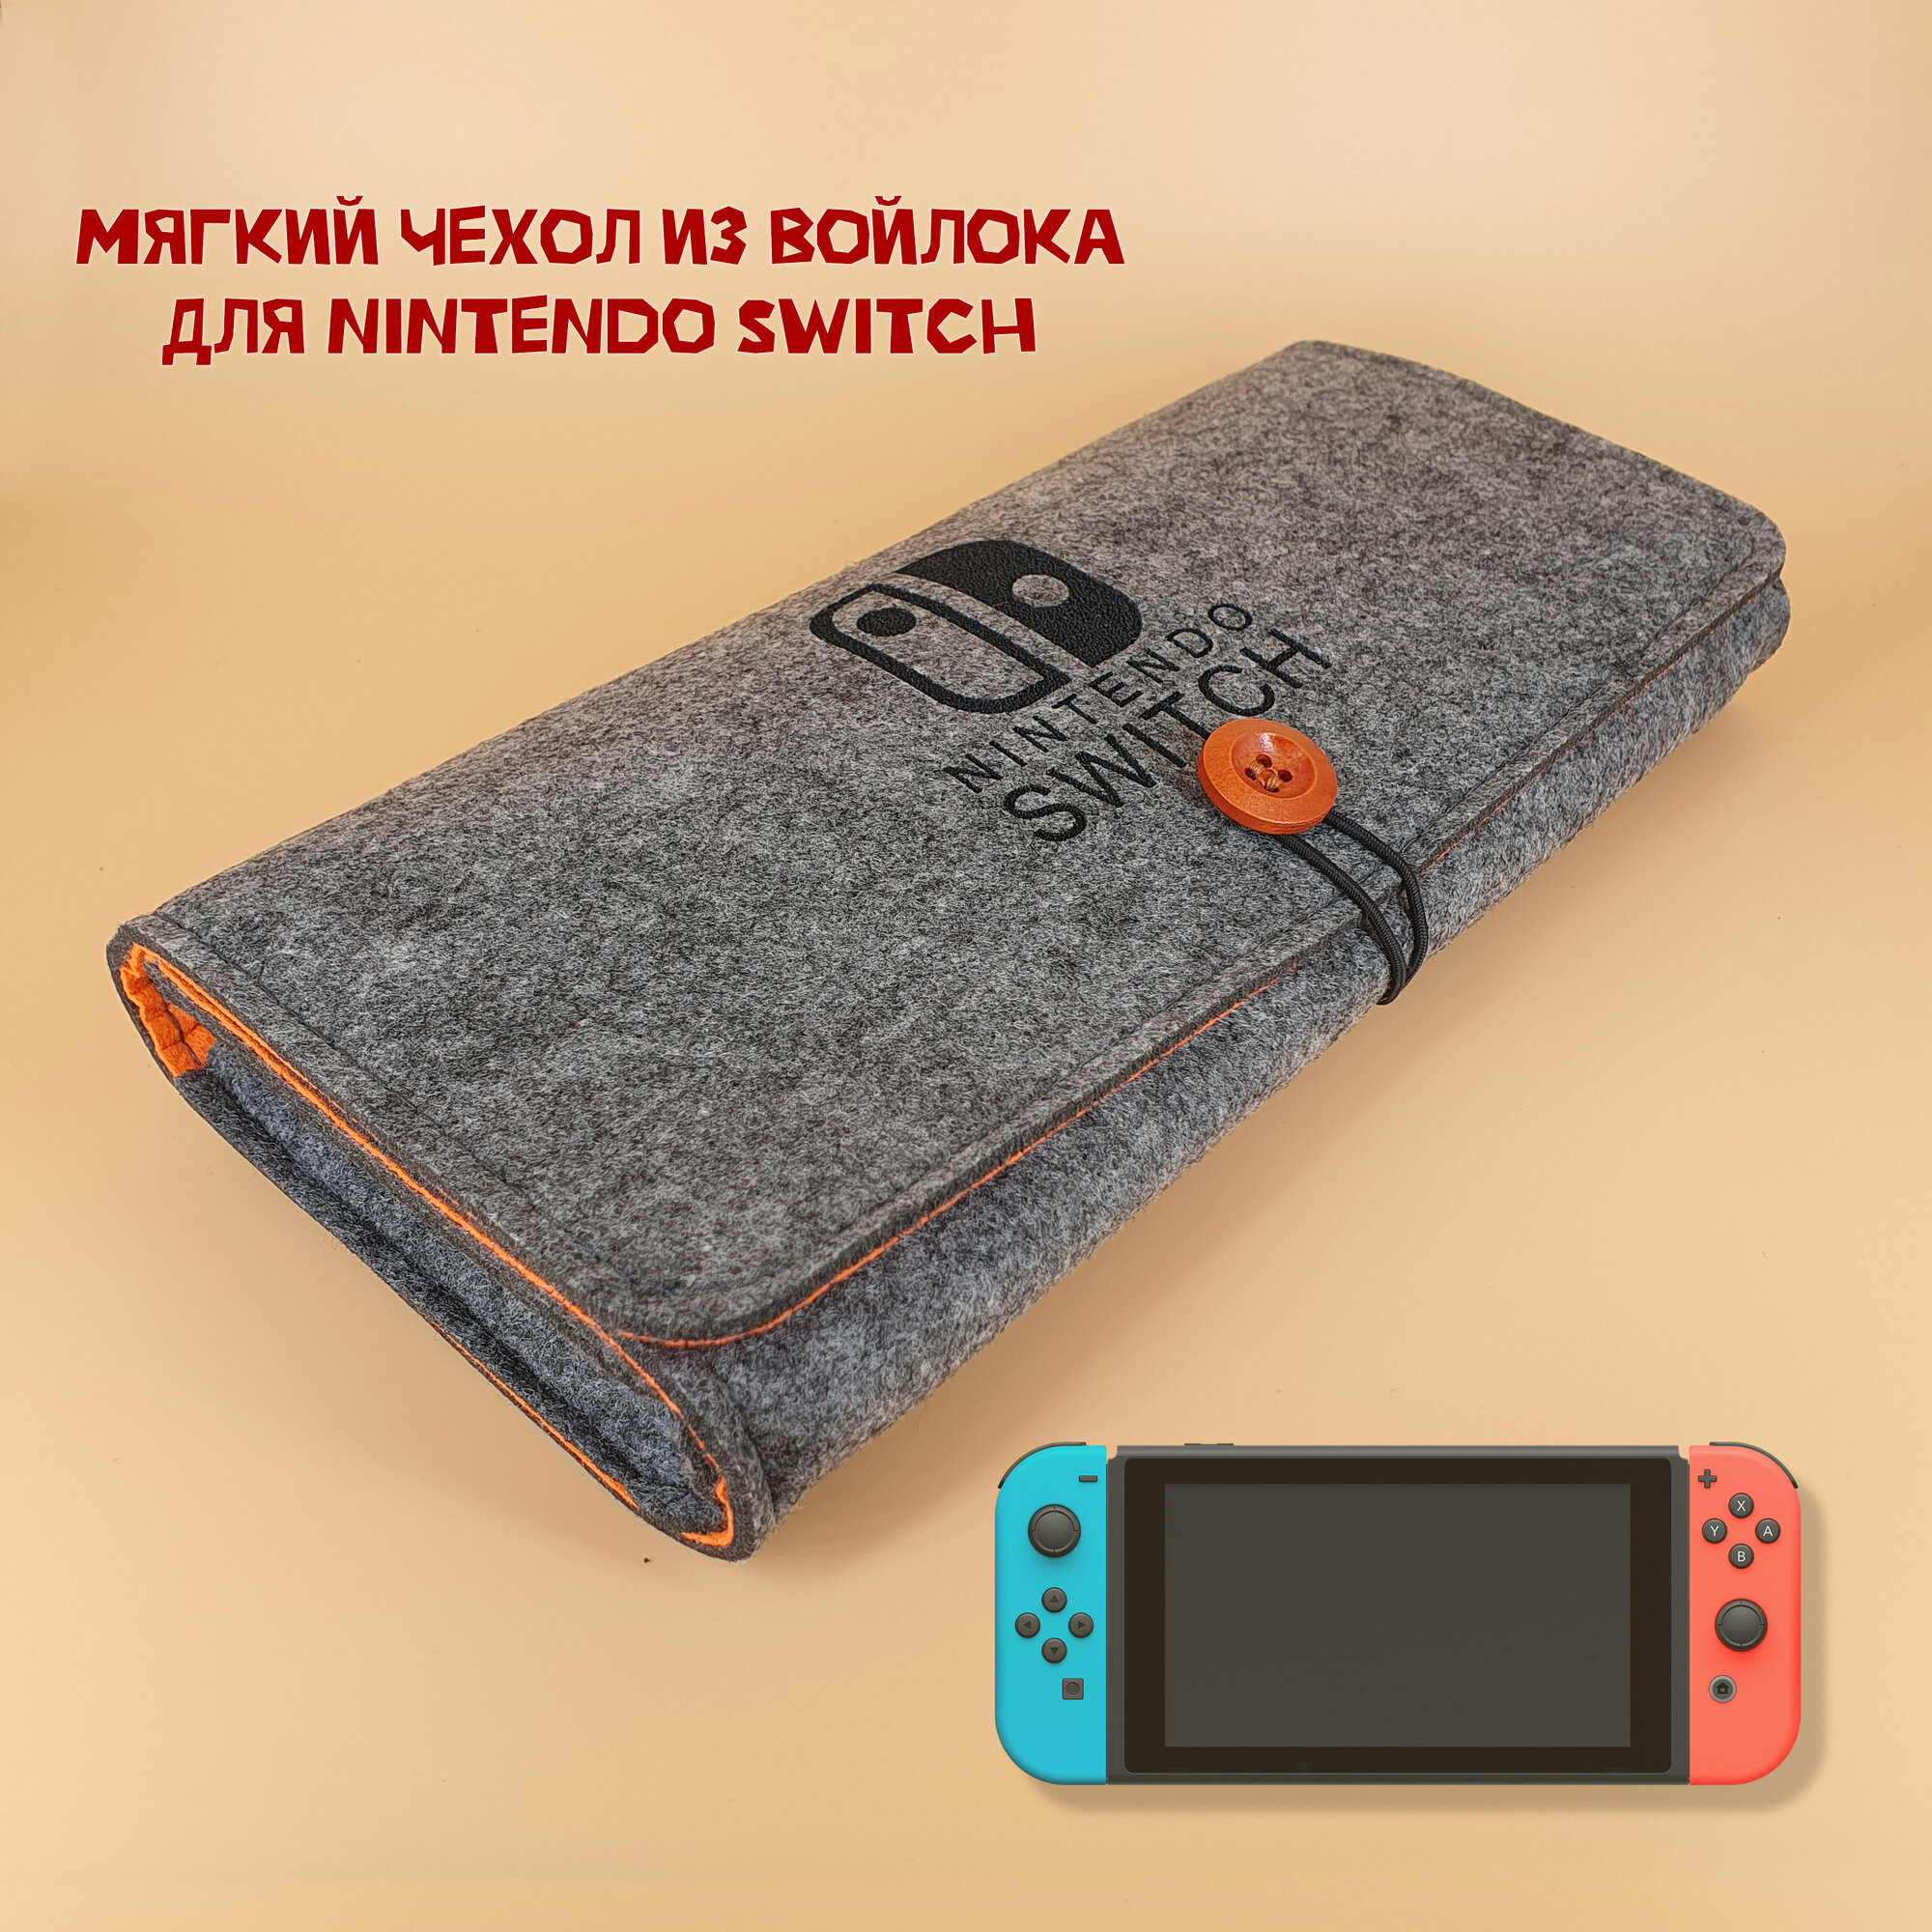 Мягкий чехол сумка для Nintendo Switch, OLED, Lite из войлока, очень приятный на ощупь, темно-серый тип2